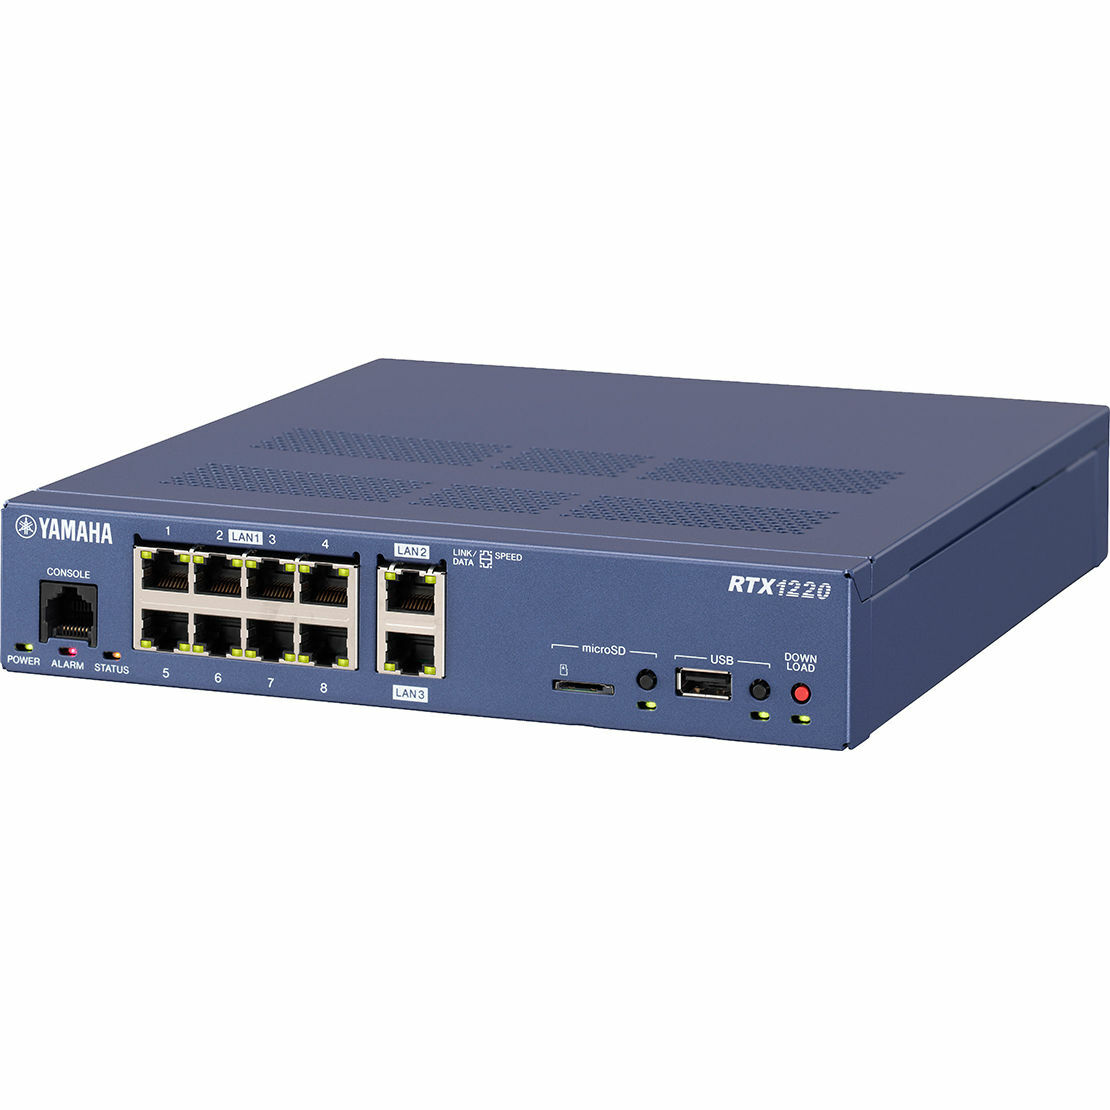 ギガビット 対応 ポート 搭載 RTX1220 VPN ルーター YAMAHA ヤマハ 中小規模 最適 ネットワーク 中小規模拠点向けVPNルーター(ISDN関連機能を除いた)RTX1210の機能と性能を継承最大1年間無償のYNOライセンスバンドルモデル ◆中小規模拠点向けVPNルーター ●従来モデルからの互換性確保『RTX1220』は、従来モデル「RTX1210」とソフトウェアの大半を共通化しており、ISDN関連機能を外した点を除き、機能の互換性を確保しています。そのため、「RTX1210」で培った設定のノウハウを活かしたネットワークを構築できます。また、ハードウェアについても、筐体サイズやLAN/WANのポート数、最大消費電力に変更はなく、「RTX1210」の代替機としても十分に機能します。＜RTX1210からの主な変更点＞・ISDNマイグレーションに伴い使用頻度の下がったISDN S/Tポートを非搭載に変更・よりお求めになりやすい価格に改定(値下げ)・最大1年間無償のYNOライセンスを付属●中小規模ネットワークに最適なVPNルーター『RTX1220』は、LAN間接続VPNに加えてリモートアクセスVPNにも対応しているため、複数の拠点間通信を行いつつ、テレワーク等によるリモートアクセスも実現します。今後、テレワークへの移行がさらに進みリモートアクセスVPNの需要が増加した場合でも、合計100対地までのVPN接続を安定して収容することができるため、中小規模ネットワークの構築に最適です。また、従来モデル「RTX1210」の洗練されたGUIを継承しており、複雑なネットワーク構成を直感的に把握し、容易に構築することが可能です。●YNOによる遠隔管理『RTX1220』は、クラウド型管理サービス「YNO」に対応し、自宅や出張先などオフィス以外のテレワーク環境からでも簡単に機器の監視・管理をすることができます。また、インターネット回線に機器を接続して電源を入れるだけで設定が完了する「ゼロコンフィグ」により、ネットワークへの本機の追加や交換も簡単に行えます。さらに、最大1年間無償で使える「YNO」のライセンスが付属されており、追加の費用なしで「YNO」を利用可能です＊。※追加でYNOライセンスを購入すると、　2年目以降も「YNO」を継続して利用できます。　また、初年度より複数年度のライセンス購入も可能です。　「YNO」で管理するルーター1台につき、1ライセンスが必要です。●多様なネットワークに対応●モバイル通信に対応USBポートに3G/LTE携帯電話網に対応したデータ通信端末を接続して、モバイルインターネット接続を利用することができます。●データコネクトに対応フレッツ光ネクストの「データコネクト」に対応しています。データコネクトを利用して、帯域が保証された通信で拠点間接続することができます。●IPsec、L2TP、PPTPに対応『RTX1220』はIPsec、L2TP、PPTPに対応しているため、インターネット回線を利用した仮想プライベートネットワーク（VPN）を構築する場合でも、より安全にデータを送受信できます。●8ポートスイッチングハブを内蔵LAN1ポートは8ポートスイッチングハブになっています。ポート単位でLANを分割したり、リンクアグリゲーション機能を使って冗長構成を組んだりできます。そのため、多様なLAN環境に柔軟に対応できます。●ネットボランチDNSサービスに対応ヤマハが提供する無料のダイナミックDNSサービスである「ネットボランチDNSサービス」に対応します。不定IPアドレス間でのVPN接続や、リモートアクセスなどに利用できます。 2